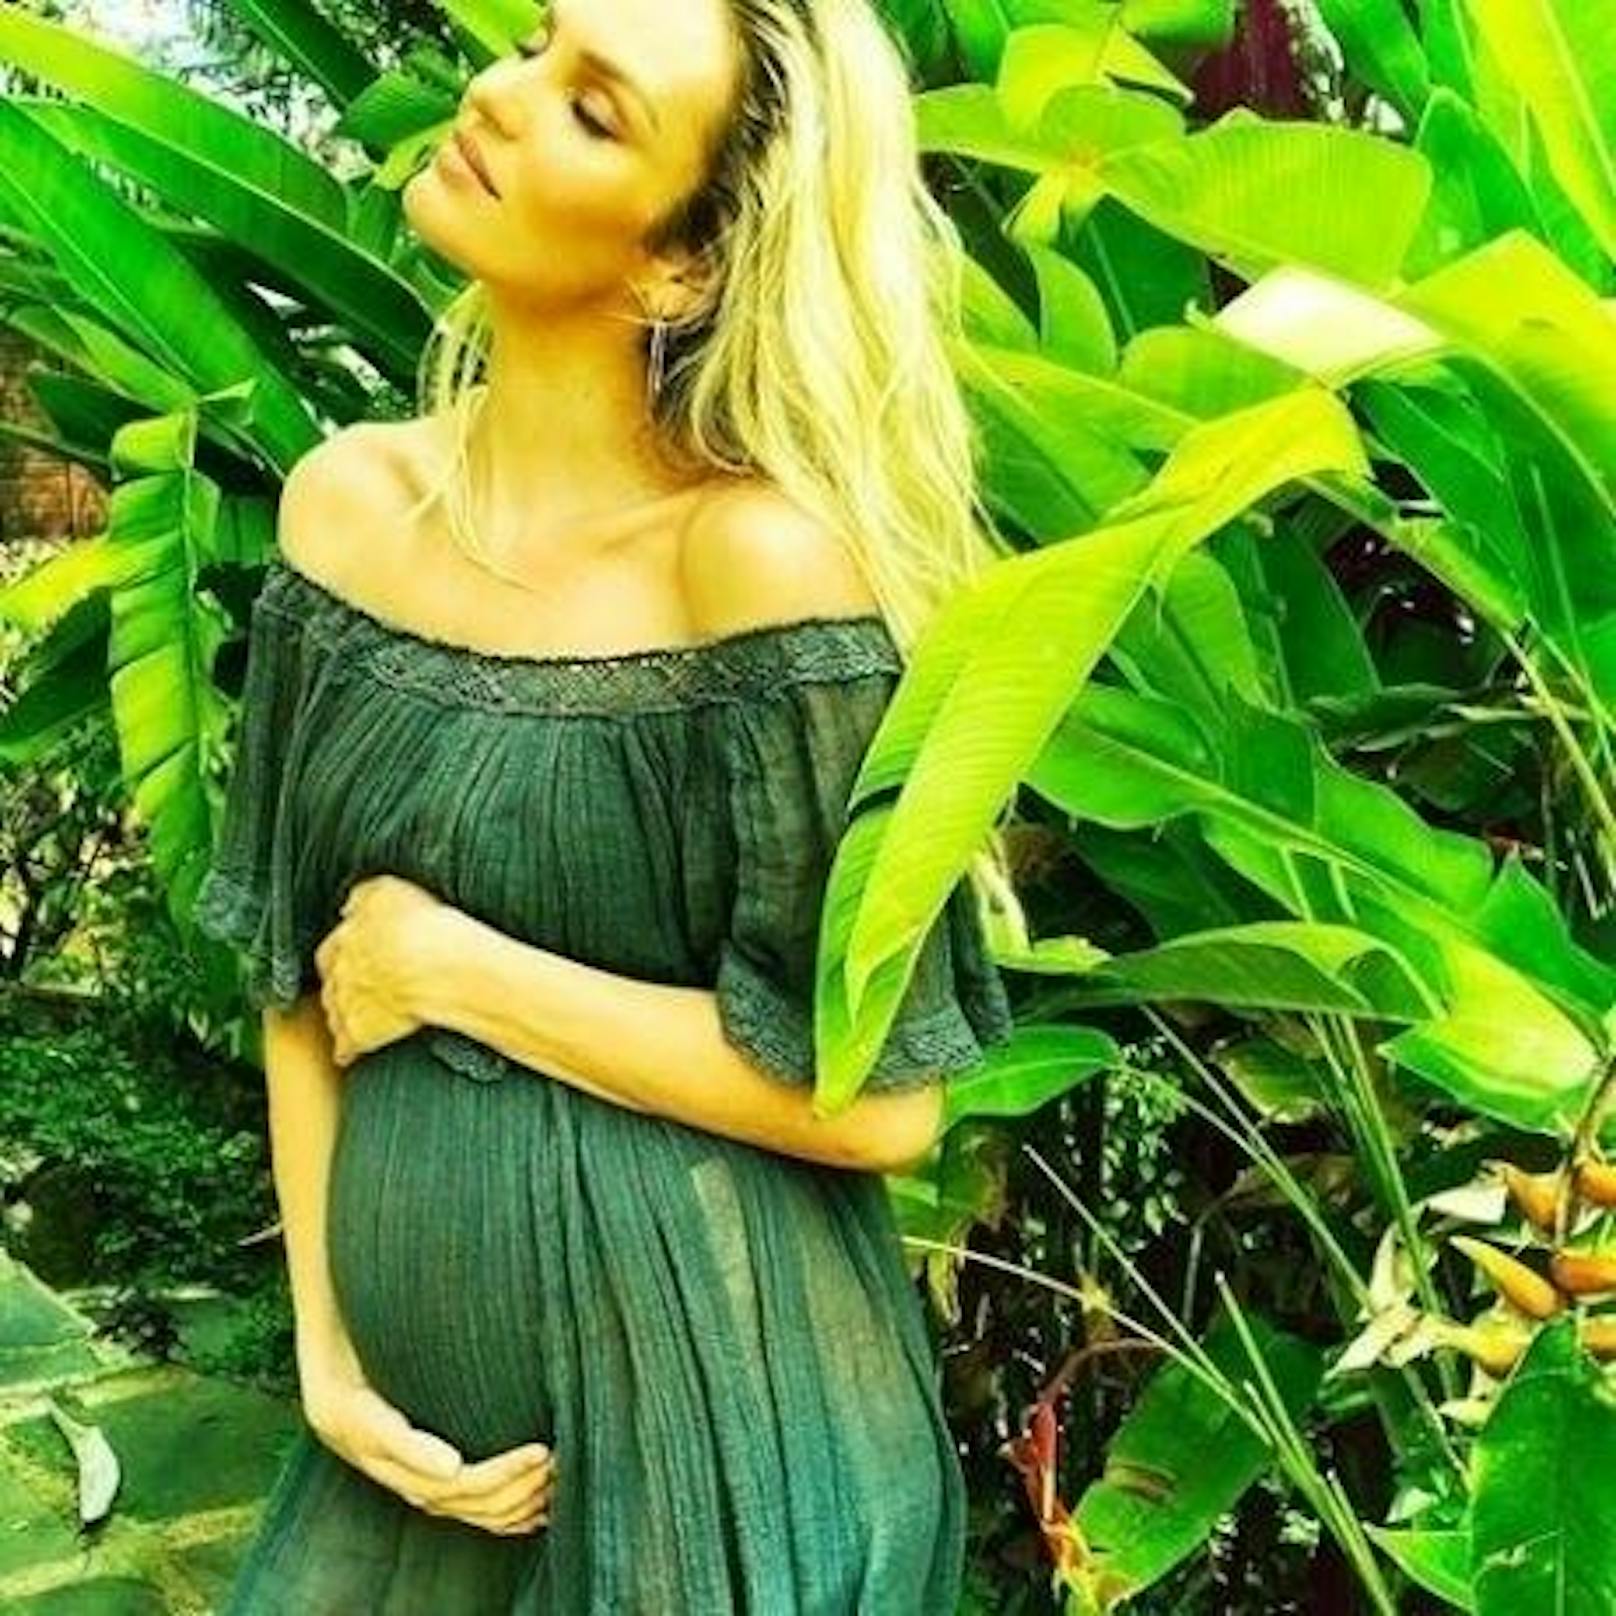 16.12.2017: Candice Swanepoel gab mit diesem süßen Instagram-Posting bekannt, dass sie zum zweiten Mal schwanger ist,